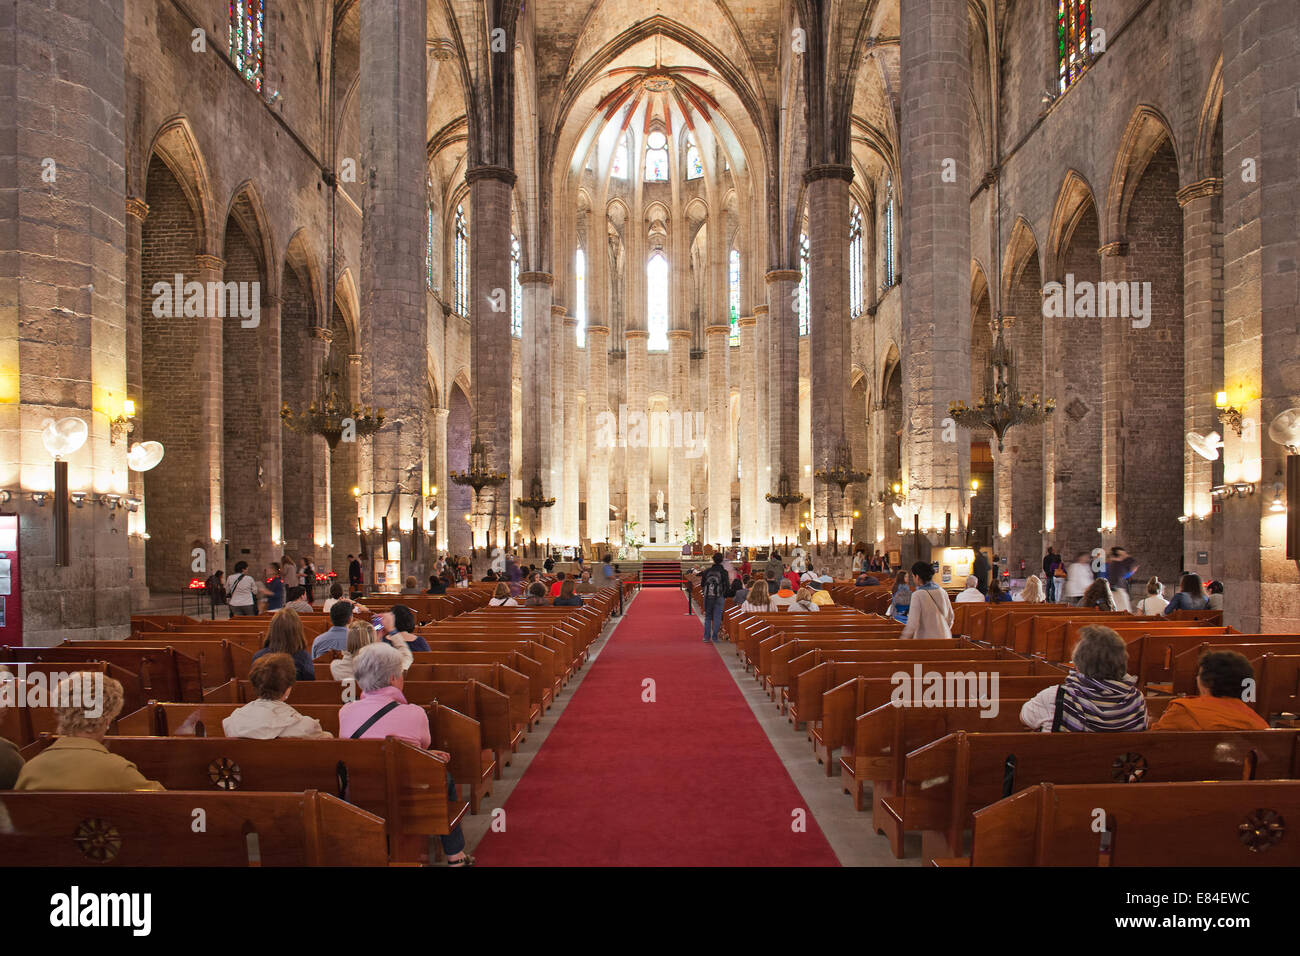 Interno della Basilica di Santa Maria del Mar a Barcellona, in Catalogna, Spagna. Architettura gotico-catalana, risalente al Foto Stock